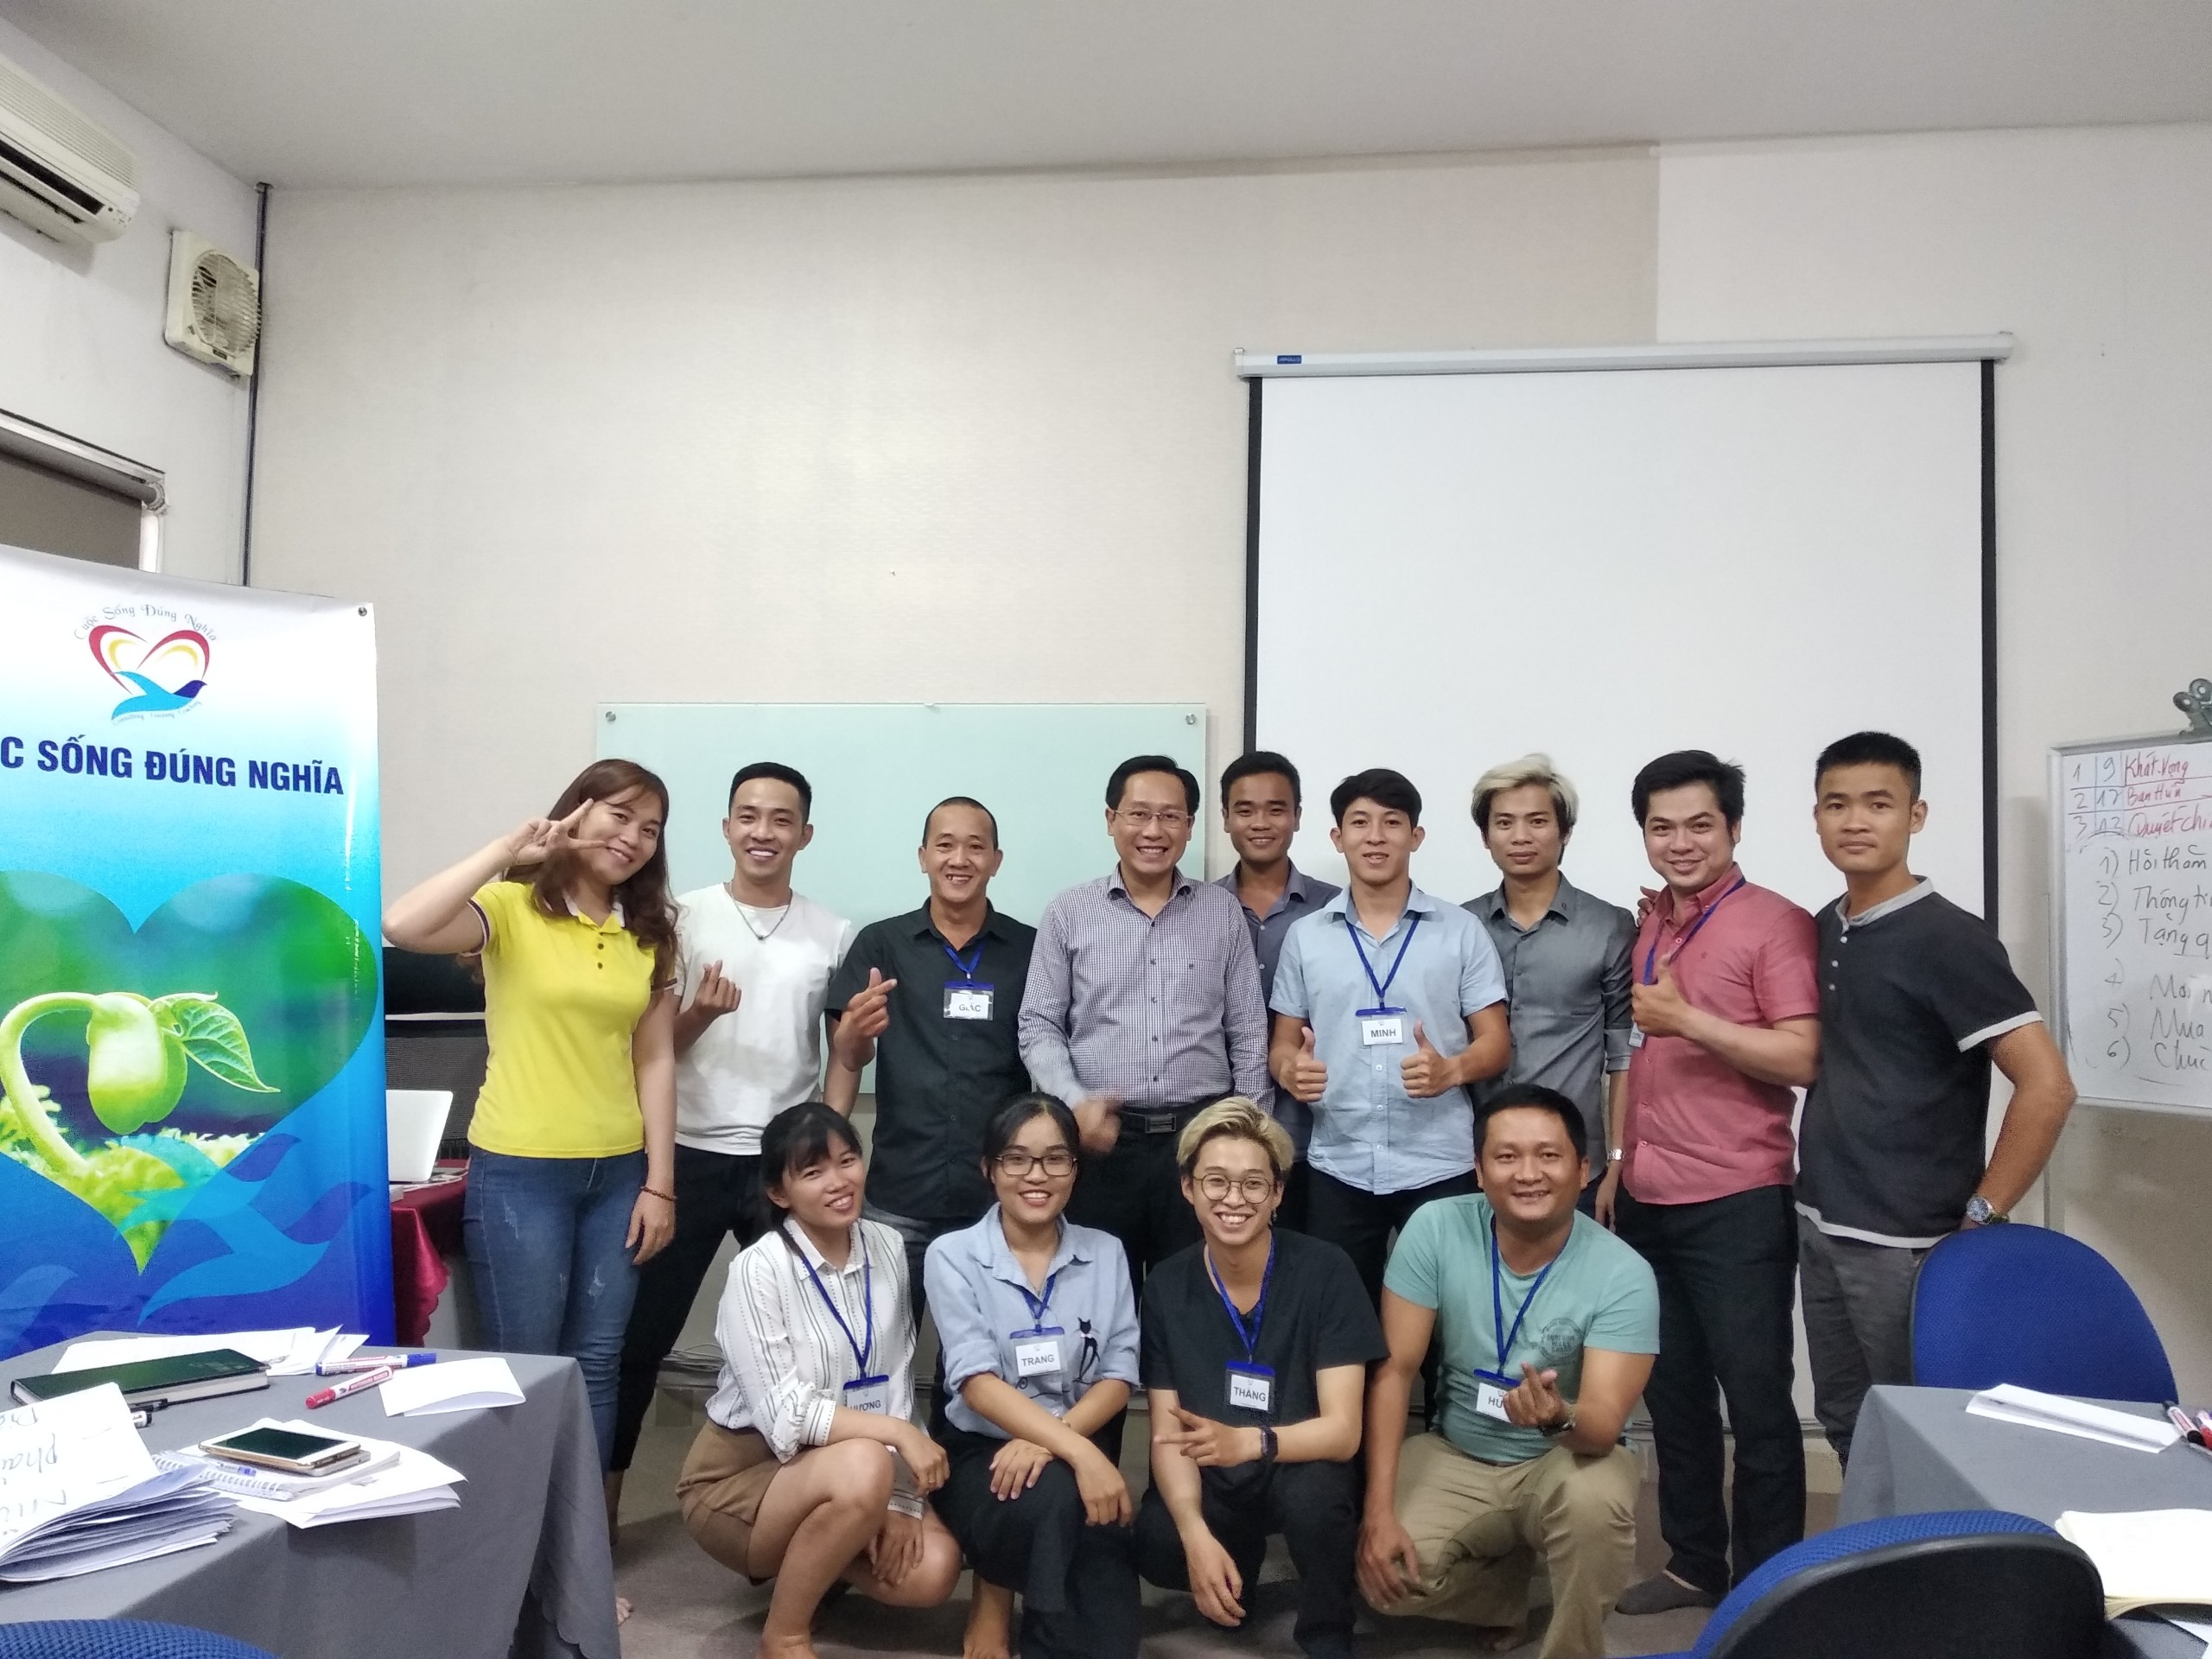 Đào tạo public: “kỹ năng giao tiếp bán hàng và CSKH hiệu quả” tại Hồ Chí Minh